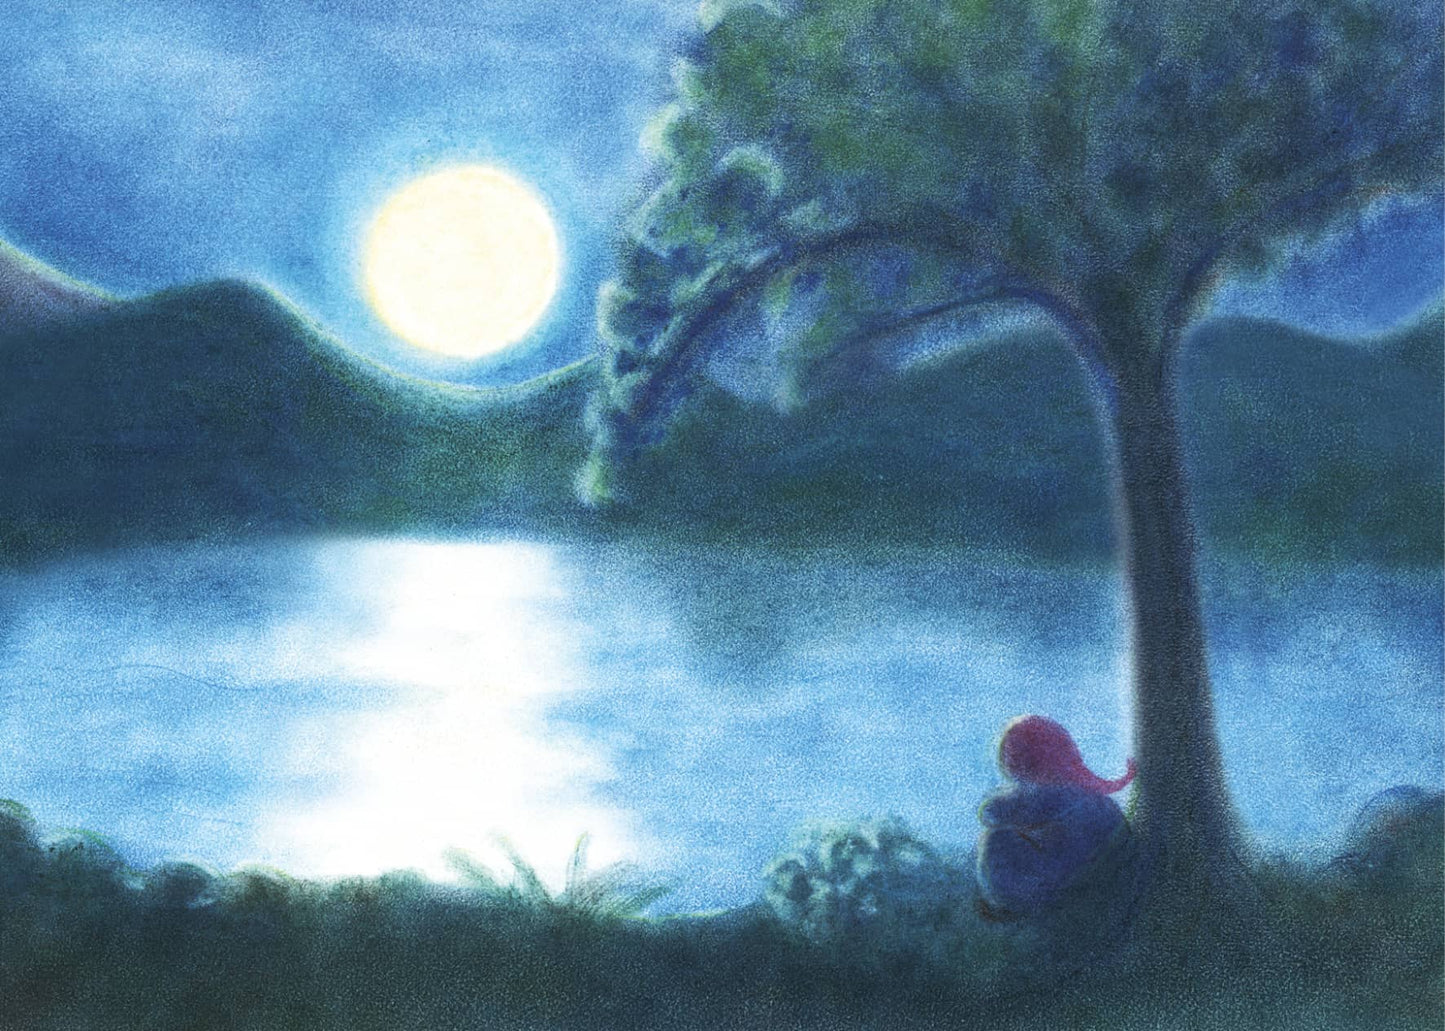 Seccorell Postkarte "Mondnacht" illustriert einen Zwerg am Ufer eines Sees unter einem leuchtenden Vollmond, gemalt mit Seccorell-Farben.